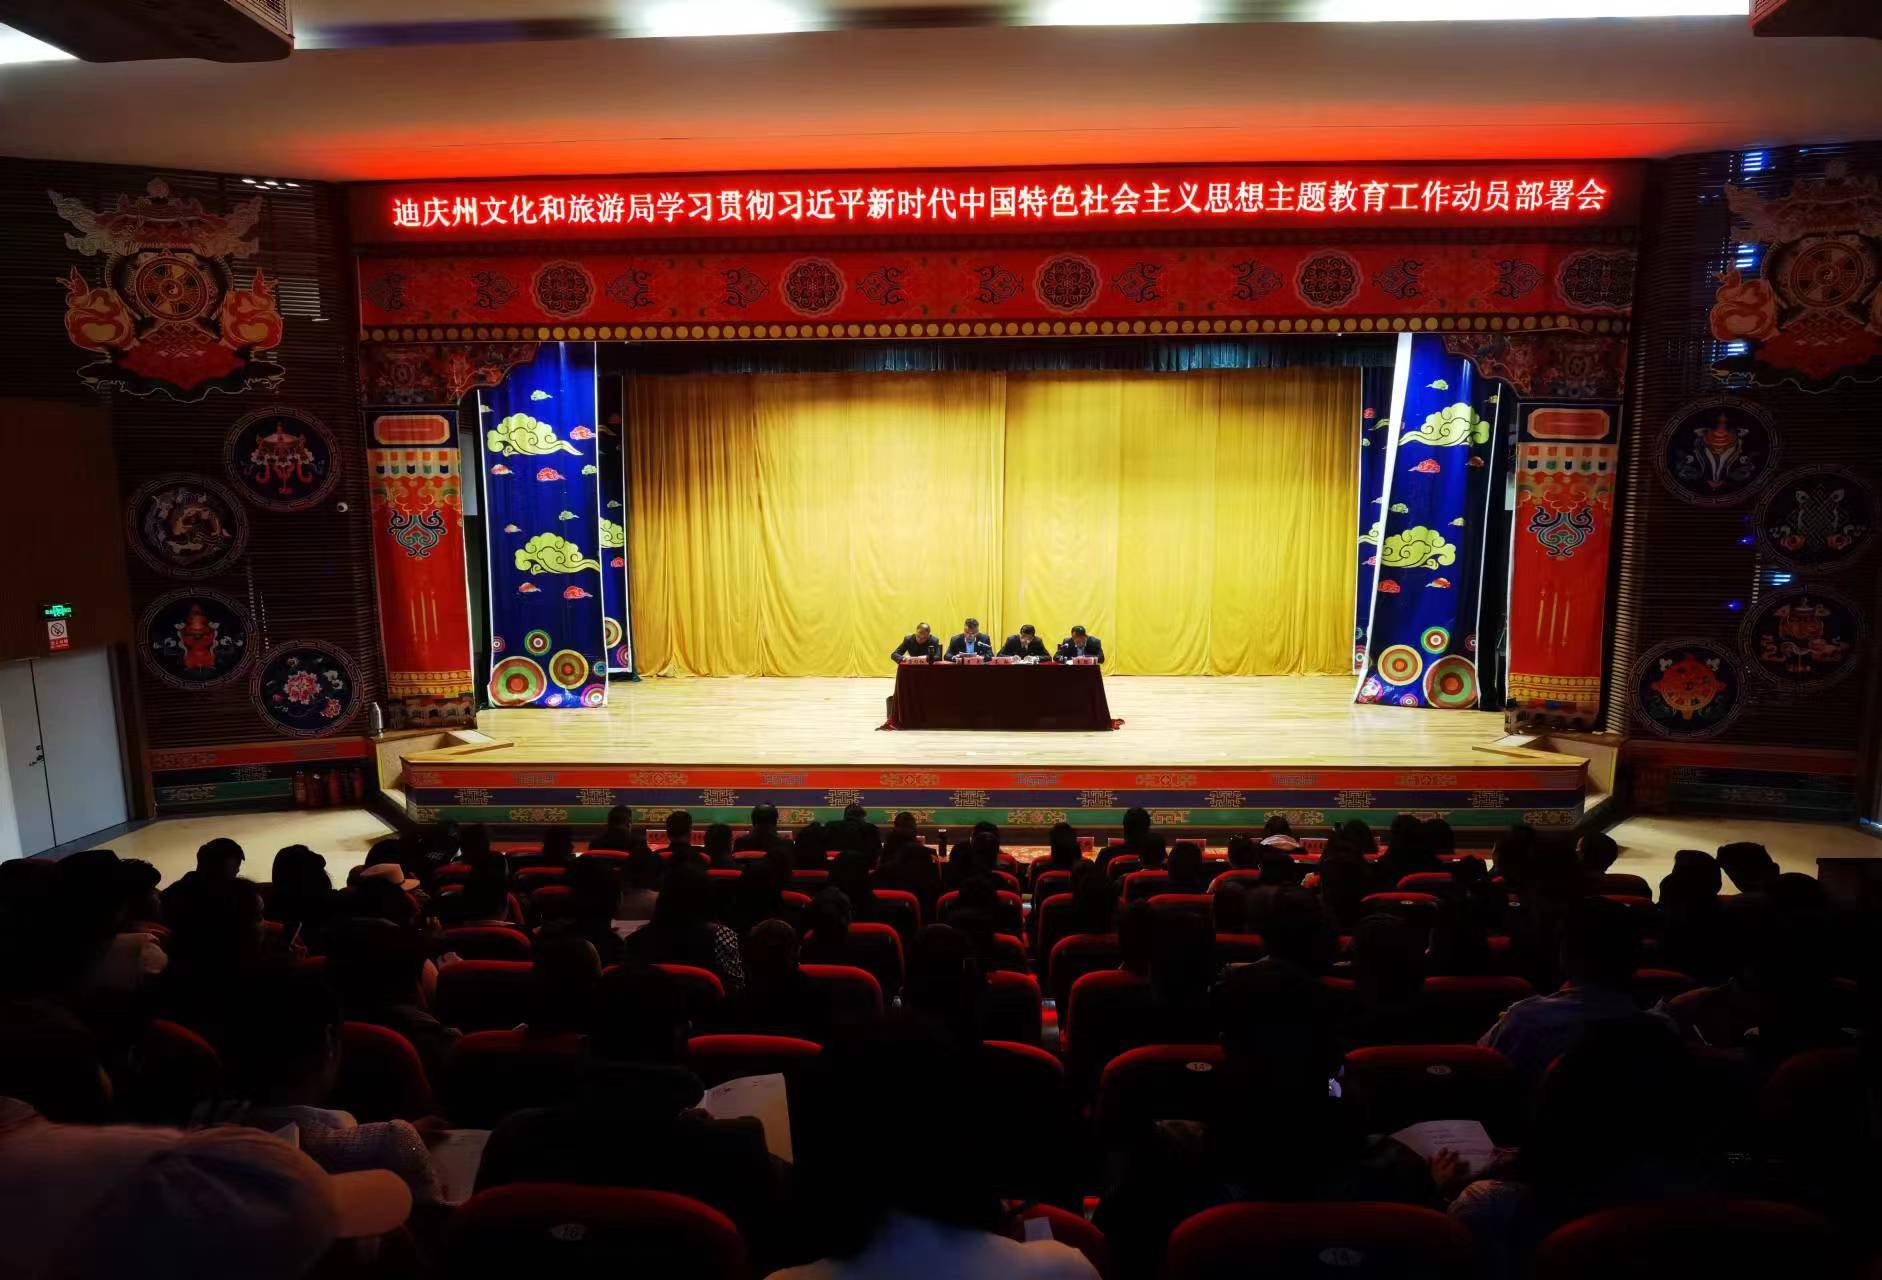 迪庆州民族中学开设了学生综合素质提升课程_头图_迪庆频道_云南网